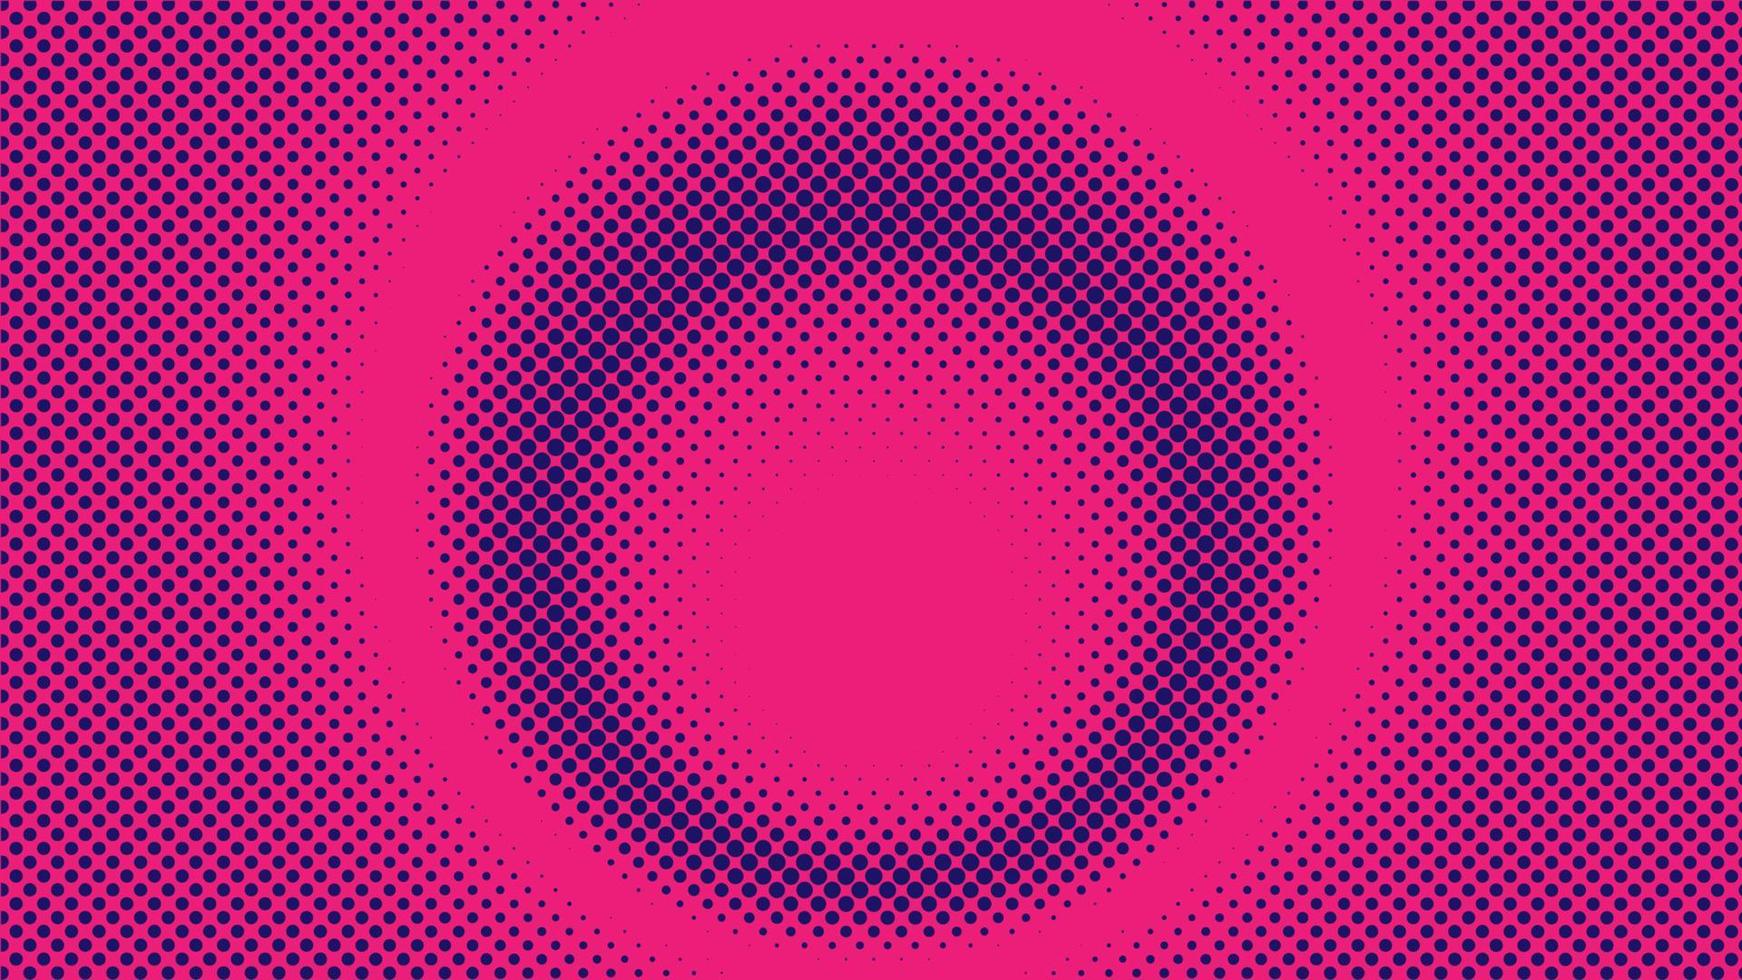 bunte radiale Halbtonhintergrund-Designschablone, Pop-Art, abstrakte Punktmusterillustration, modernes Beschaffenheitselement, Ringhalbtonverzierung, rosa magentarote violette purpurrote Abstufungstapete vektor